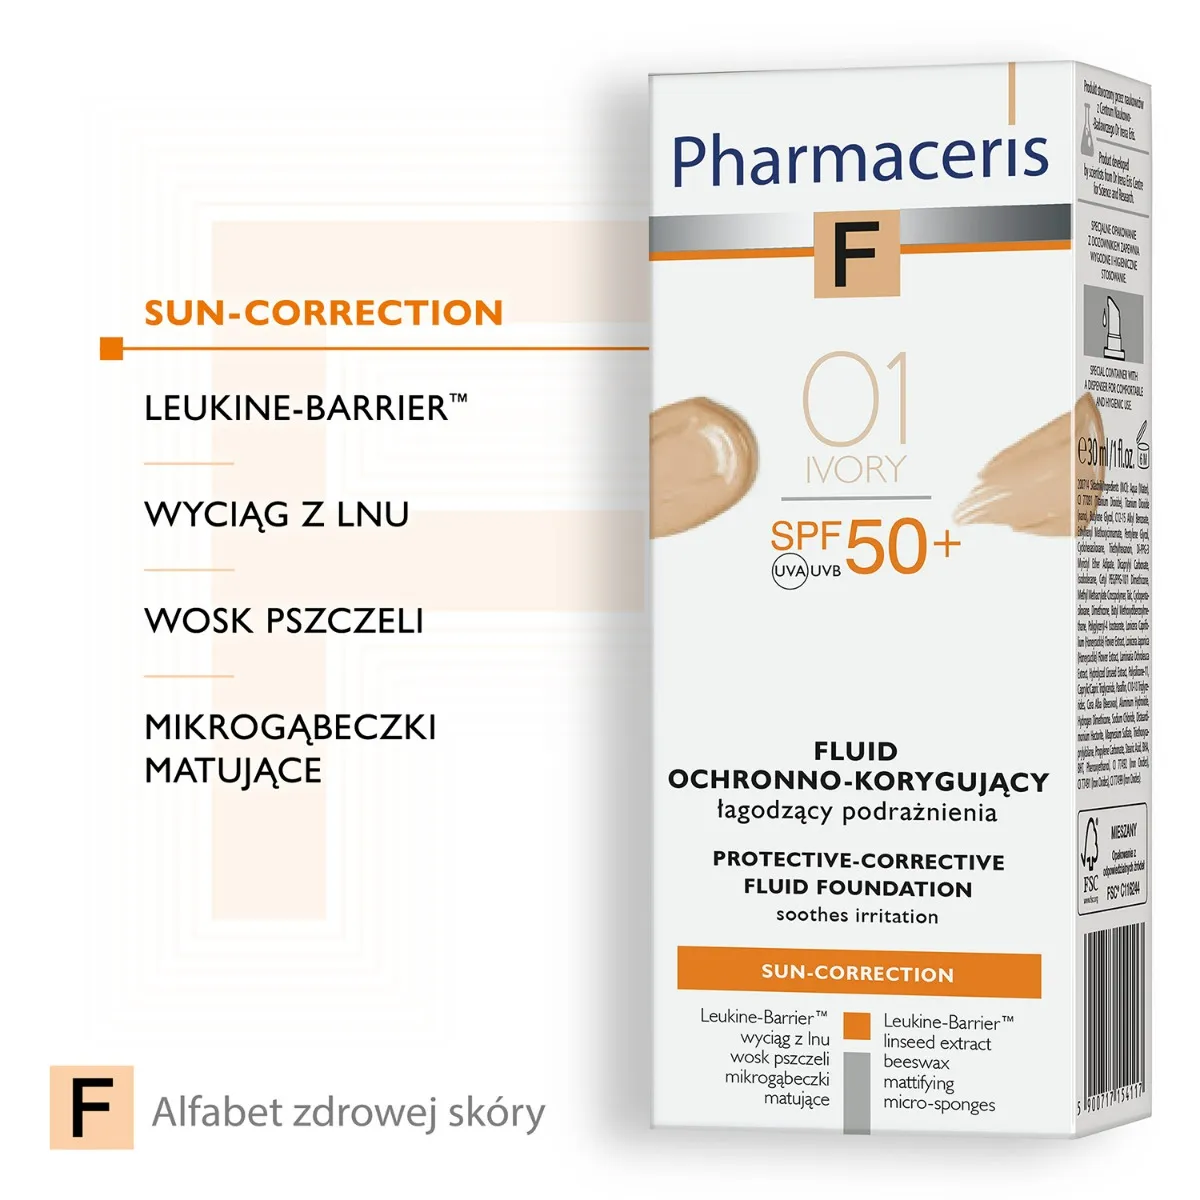 Pharmaceris F, Fluid ochronno-korygujący łagodzący podrażnienia 01 Ivory / SPF 50+ / 30 ml 